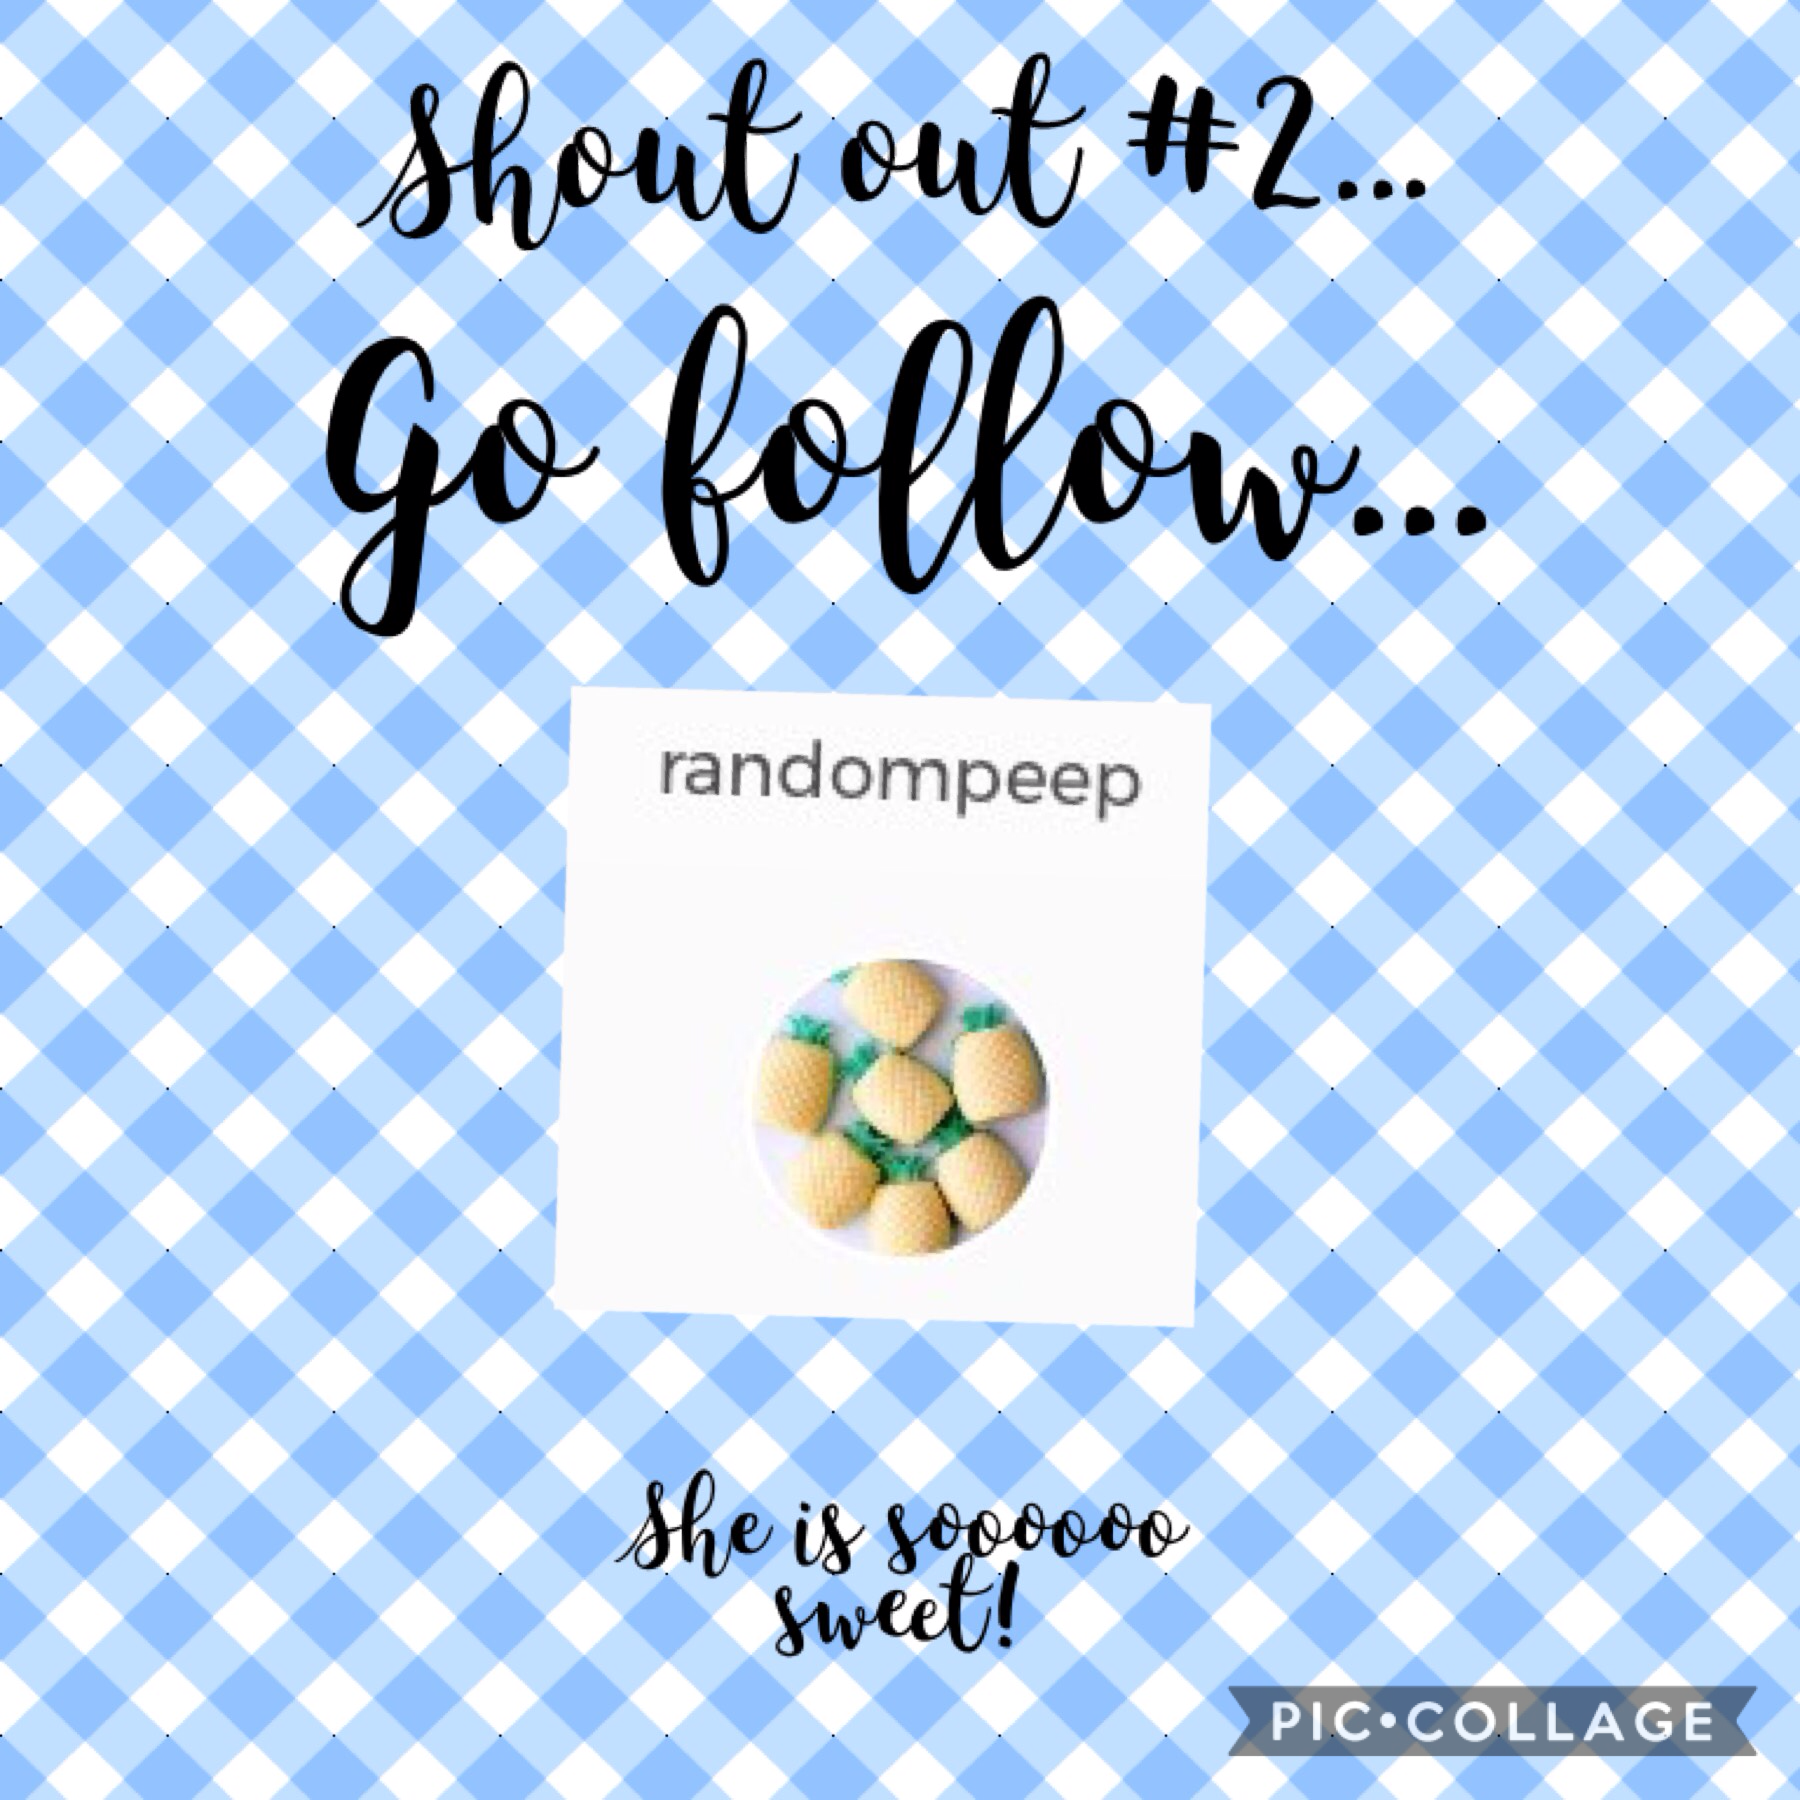 Go follow randompeep!